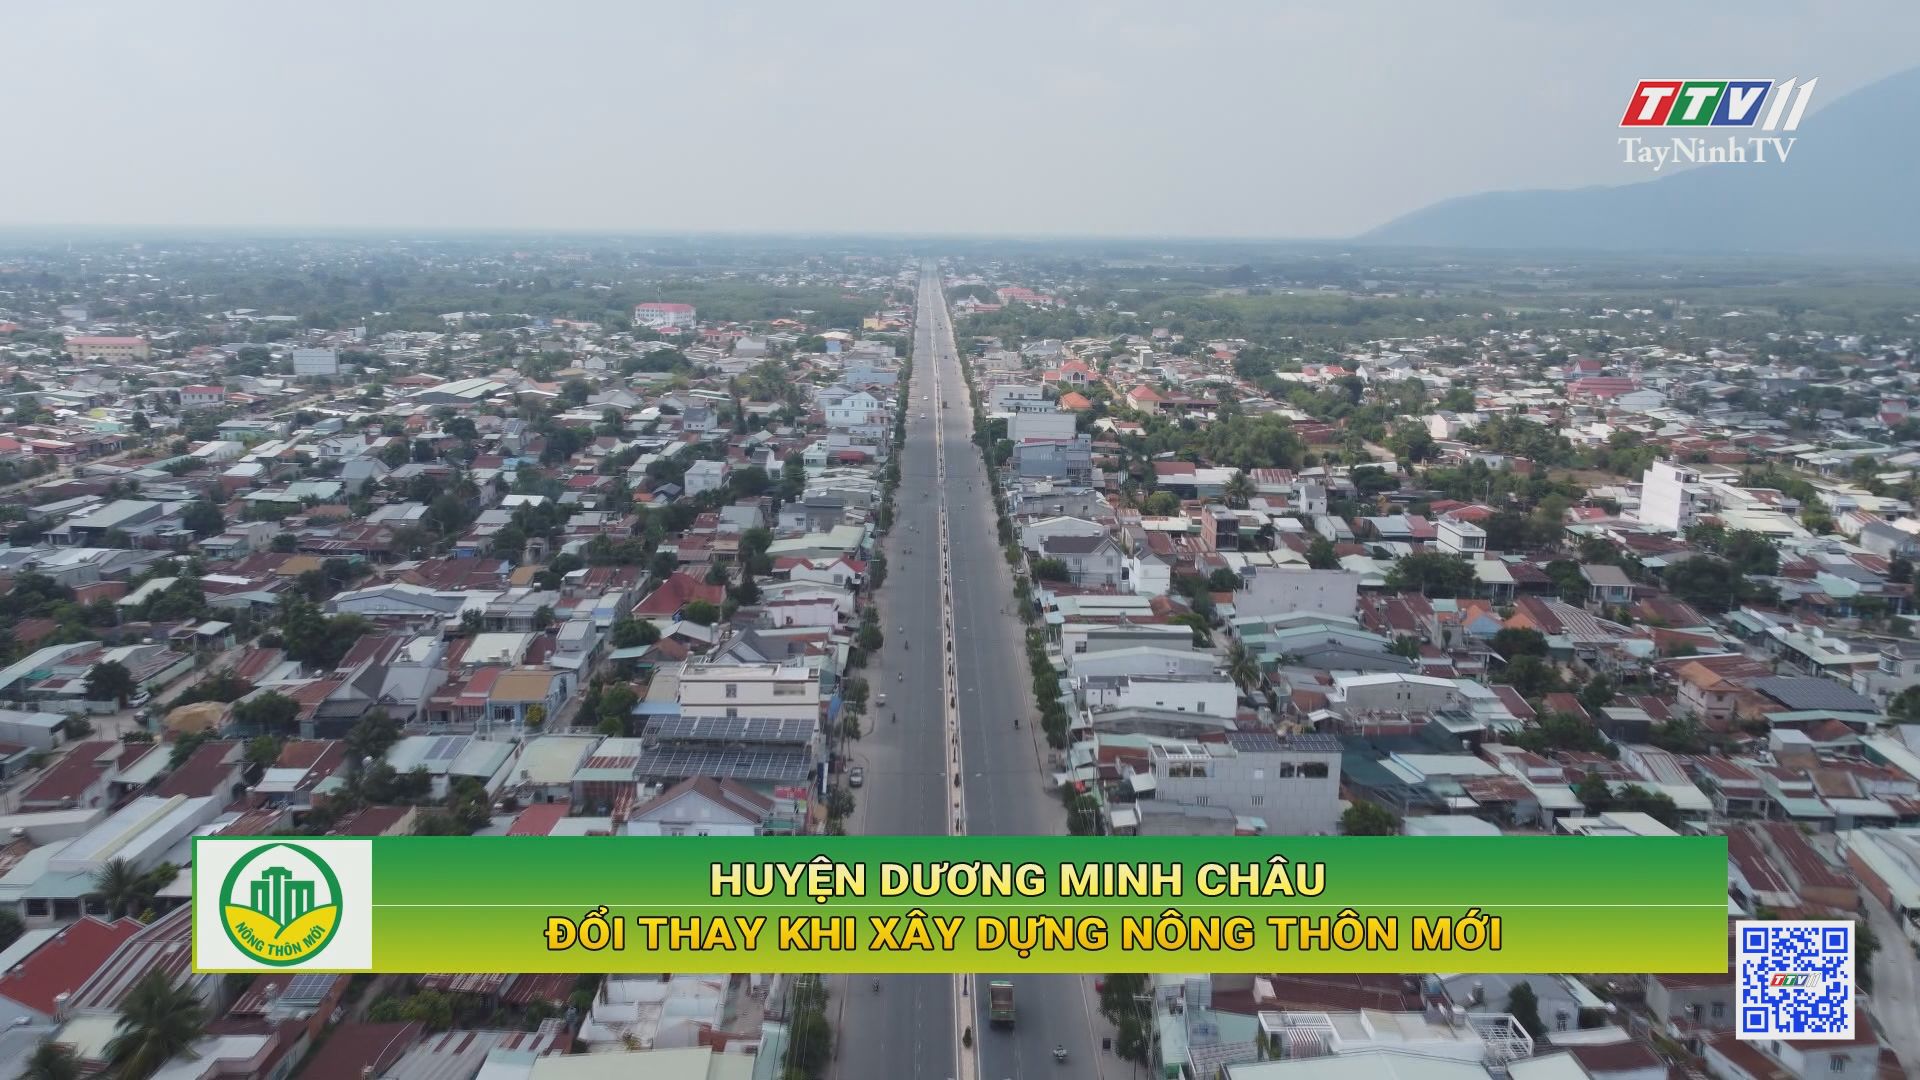 Huyện Dương Minh Châu đổi thay khi xây dựng nông thôn mới | Tây Ninh xây dựng nông thôn mới | TayNinhTV